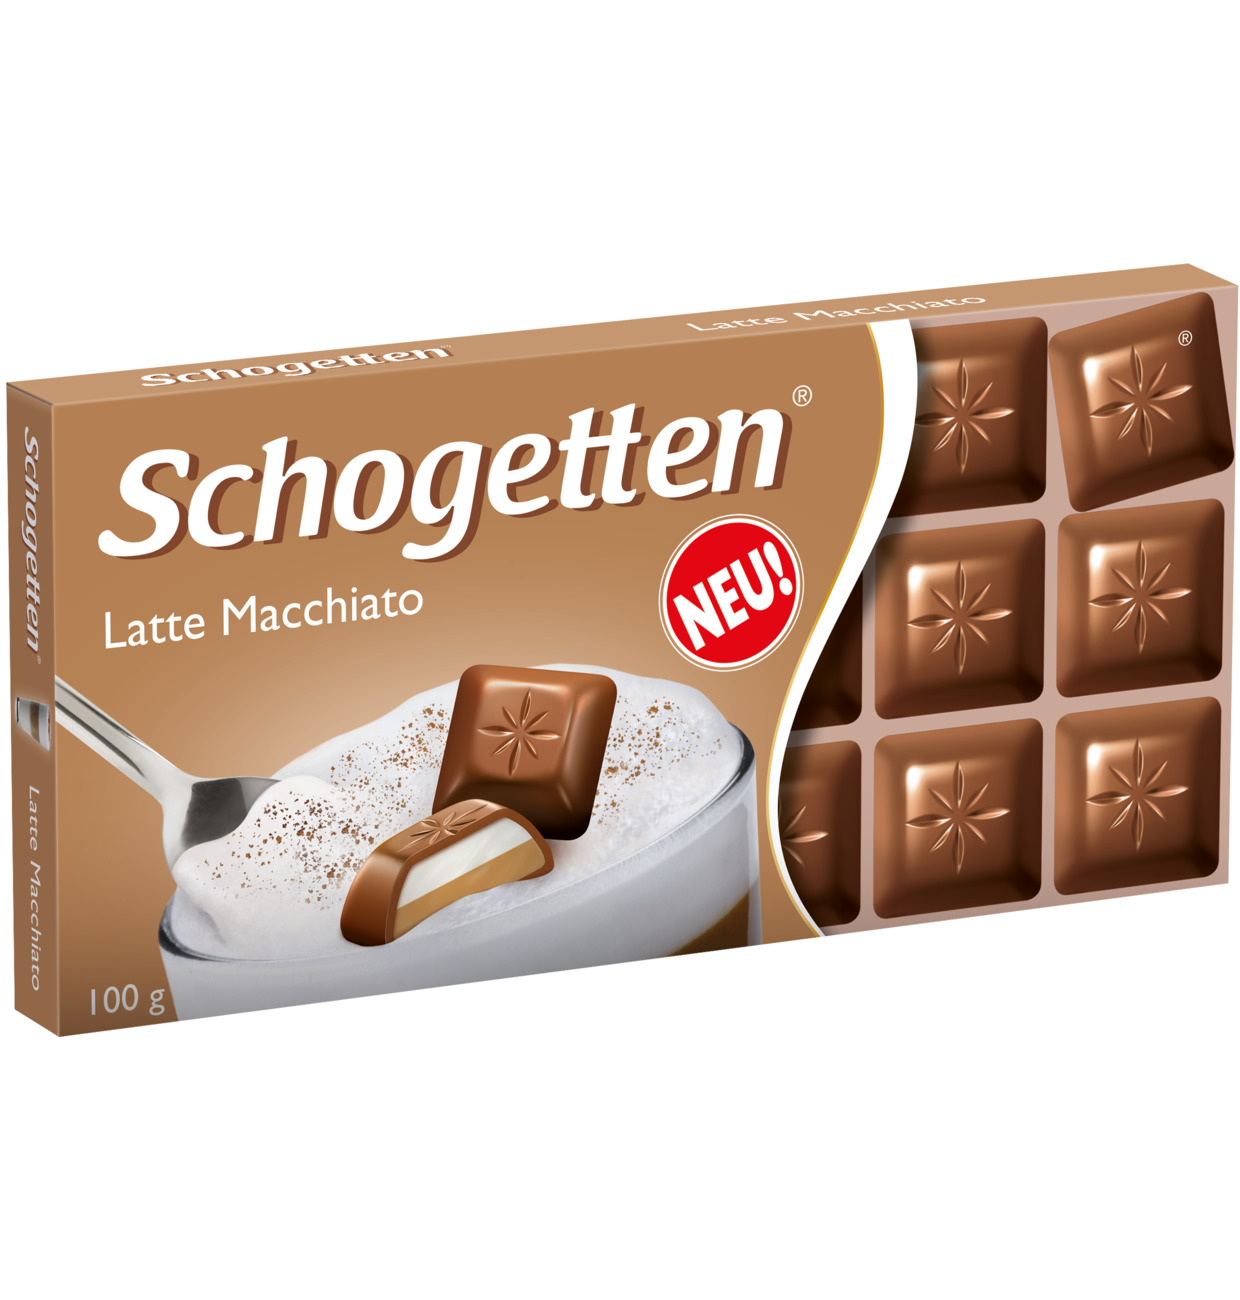 Schogetten Chocolate Latte Macchiato 100g